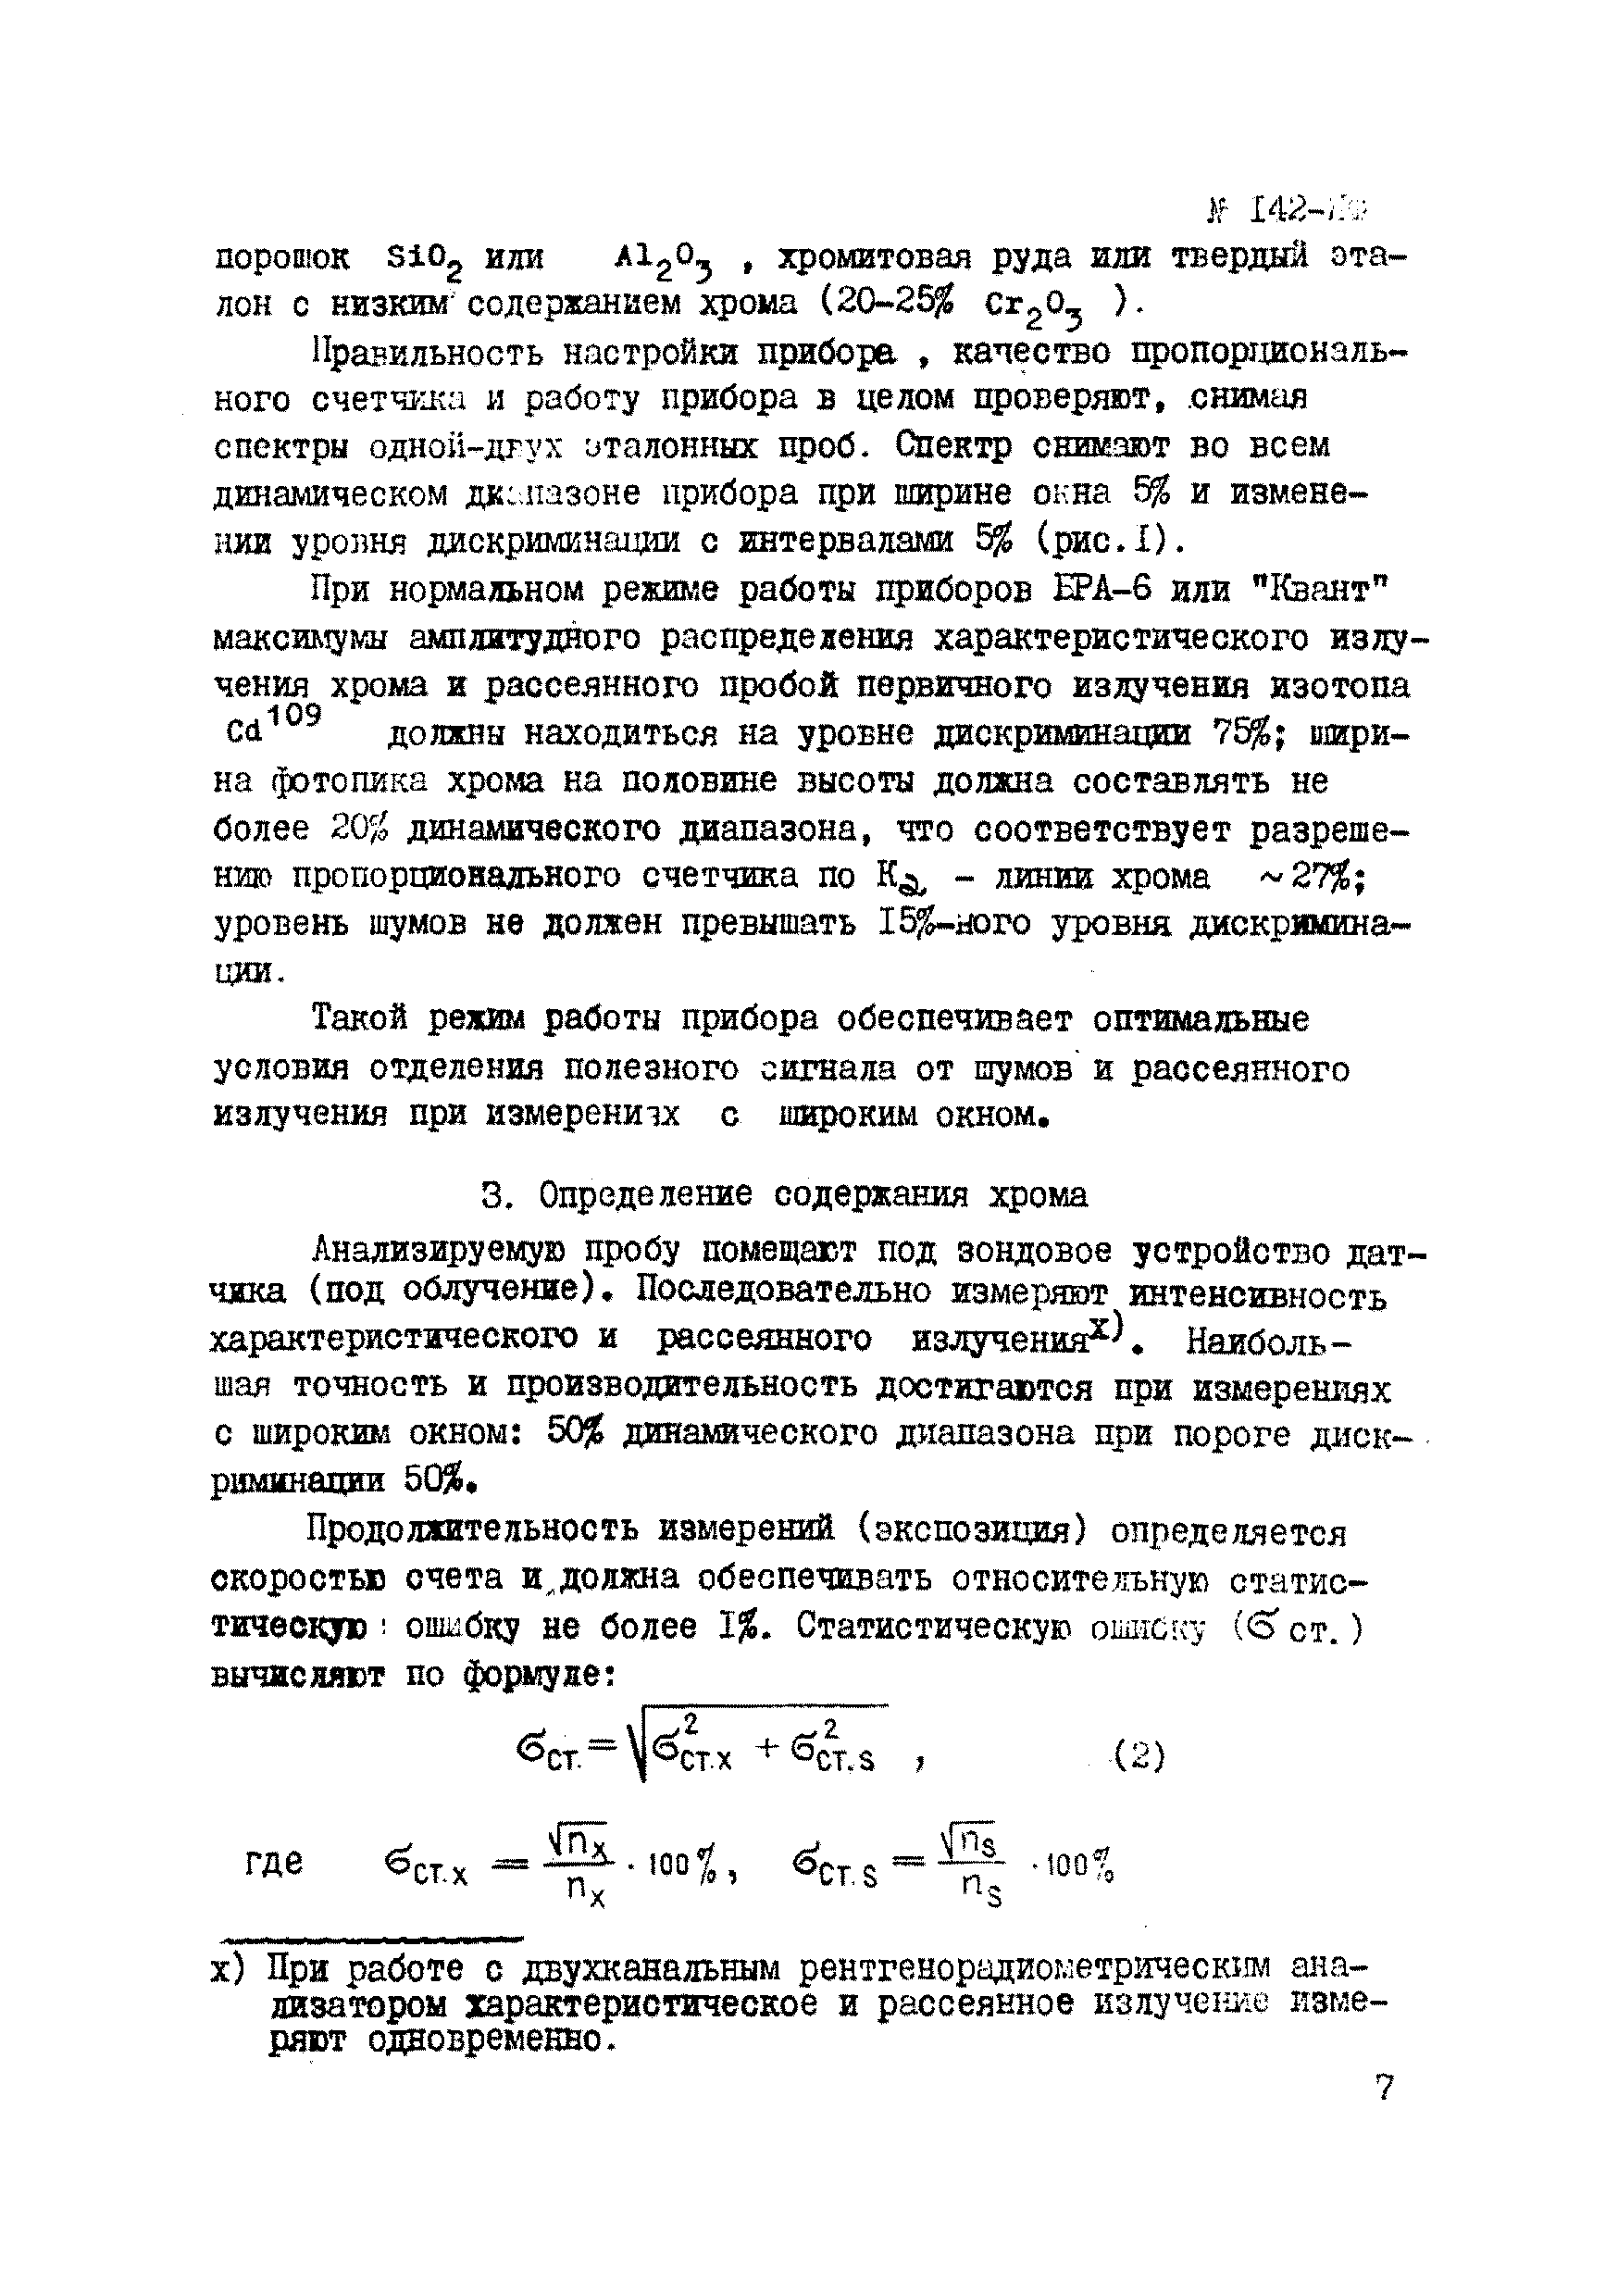 Инструкция НСАМ 142-ЯФ